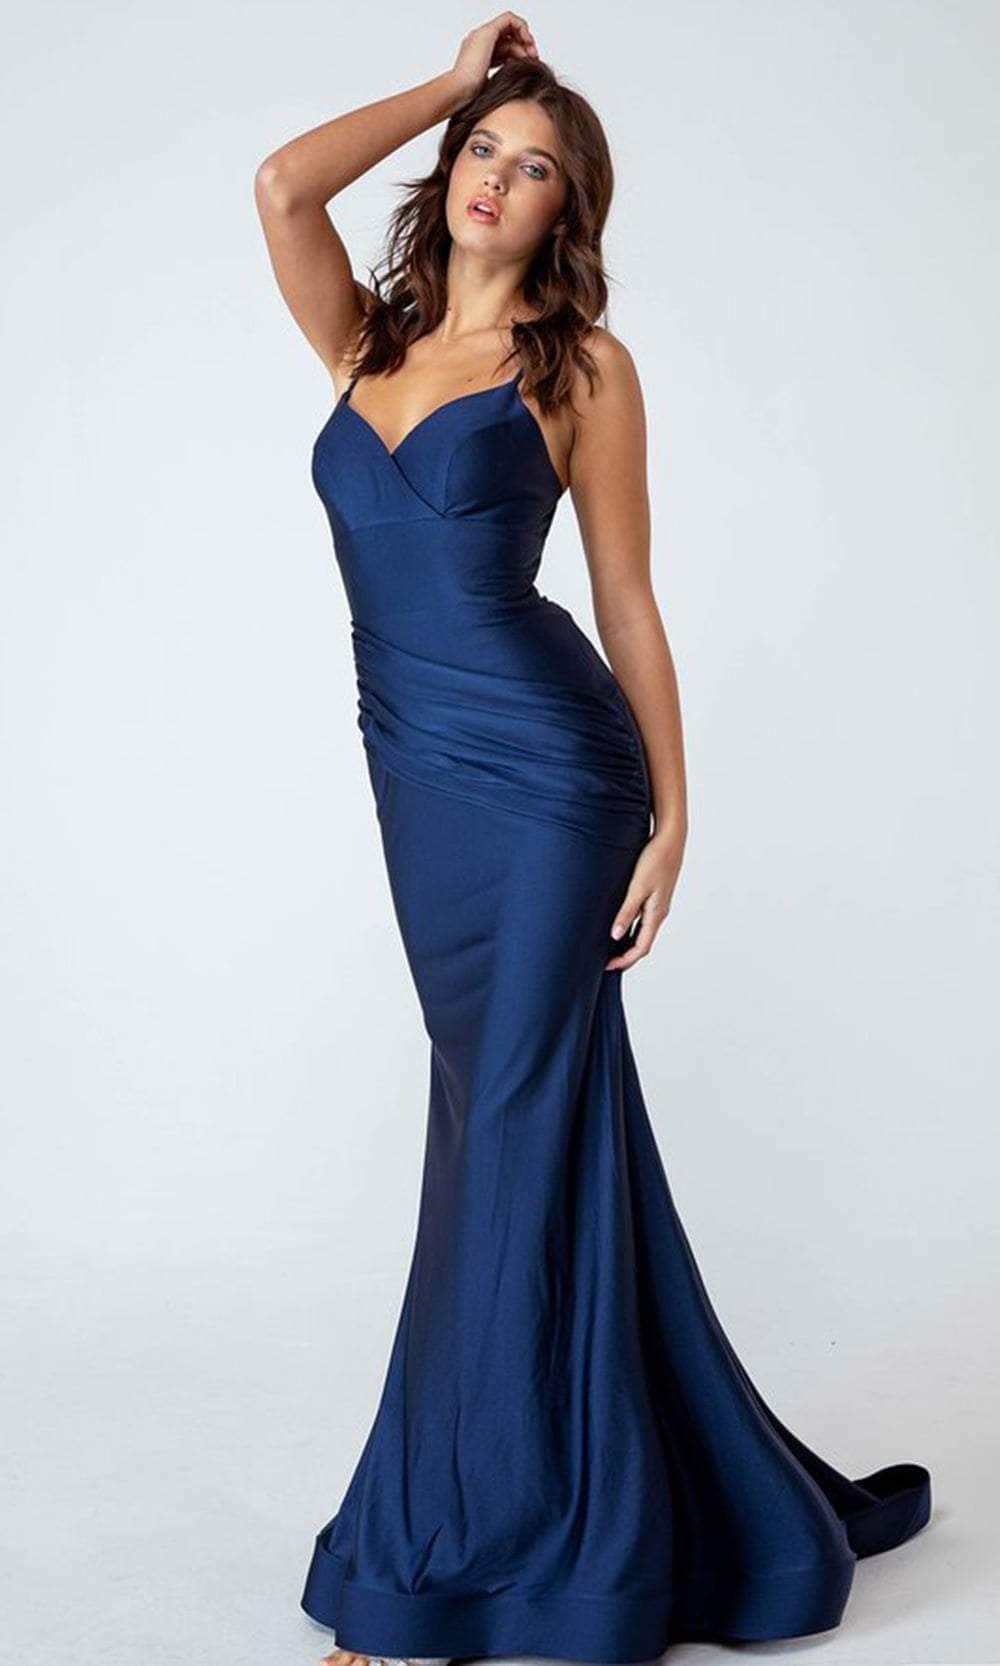 Image of Eureka Fashion 9151 - V-Neck Sleeveless Prom Dress